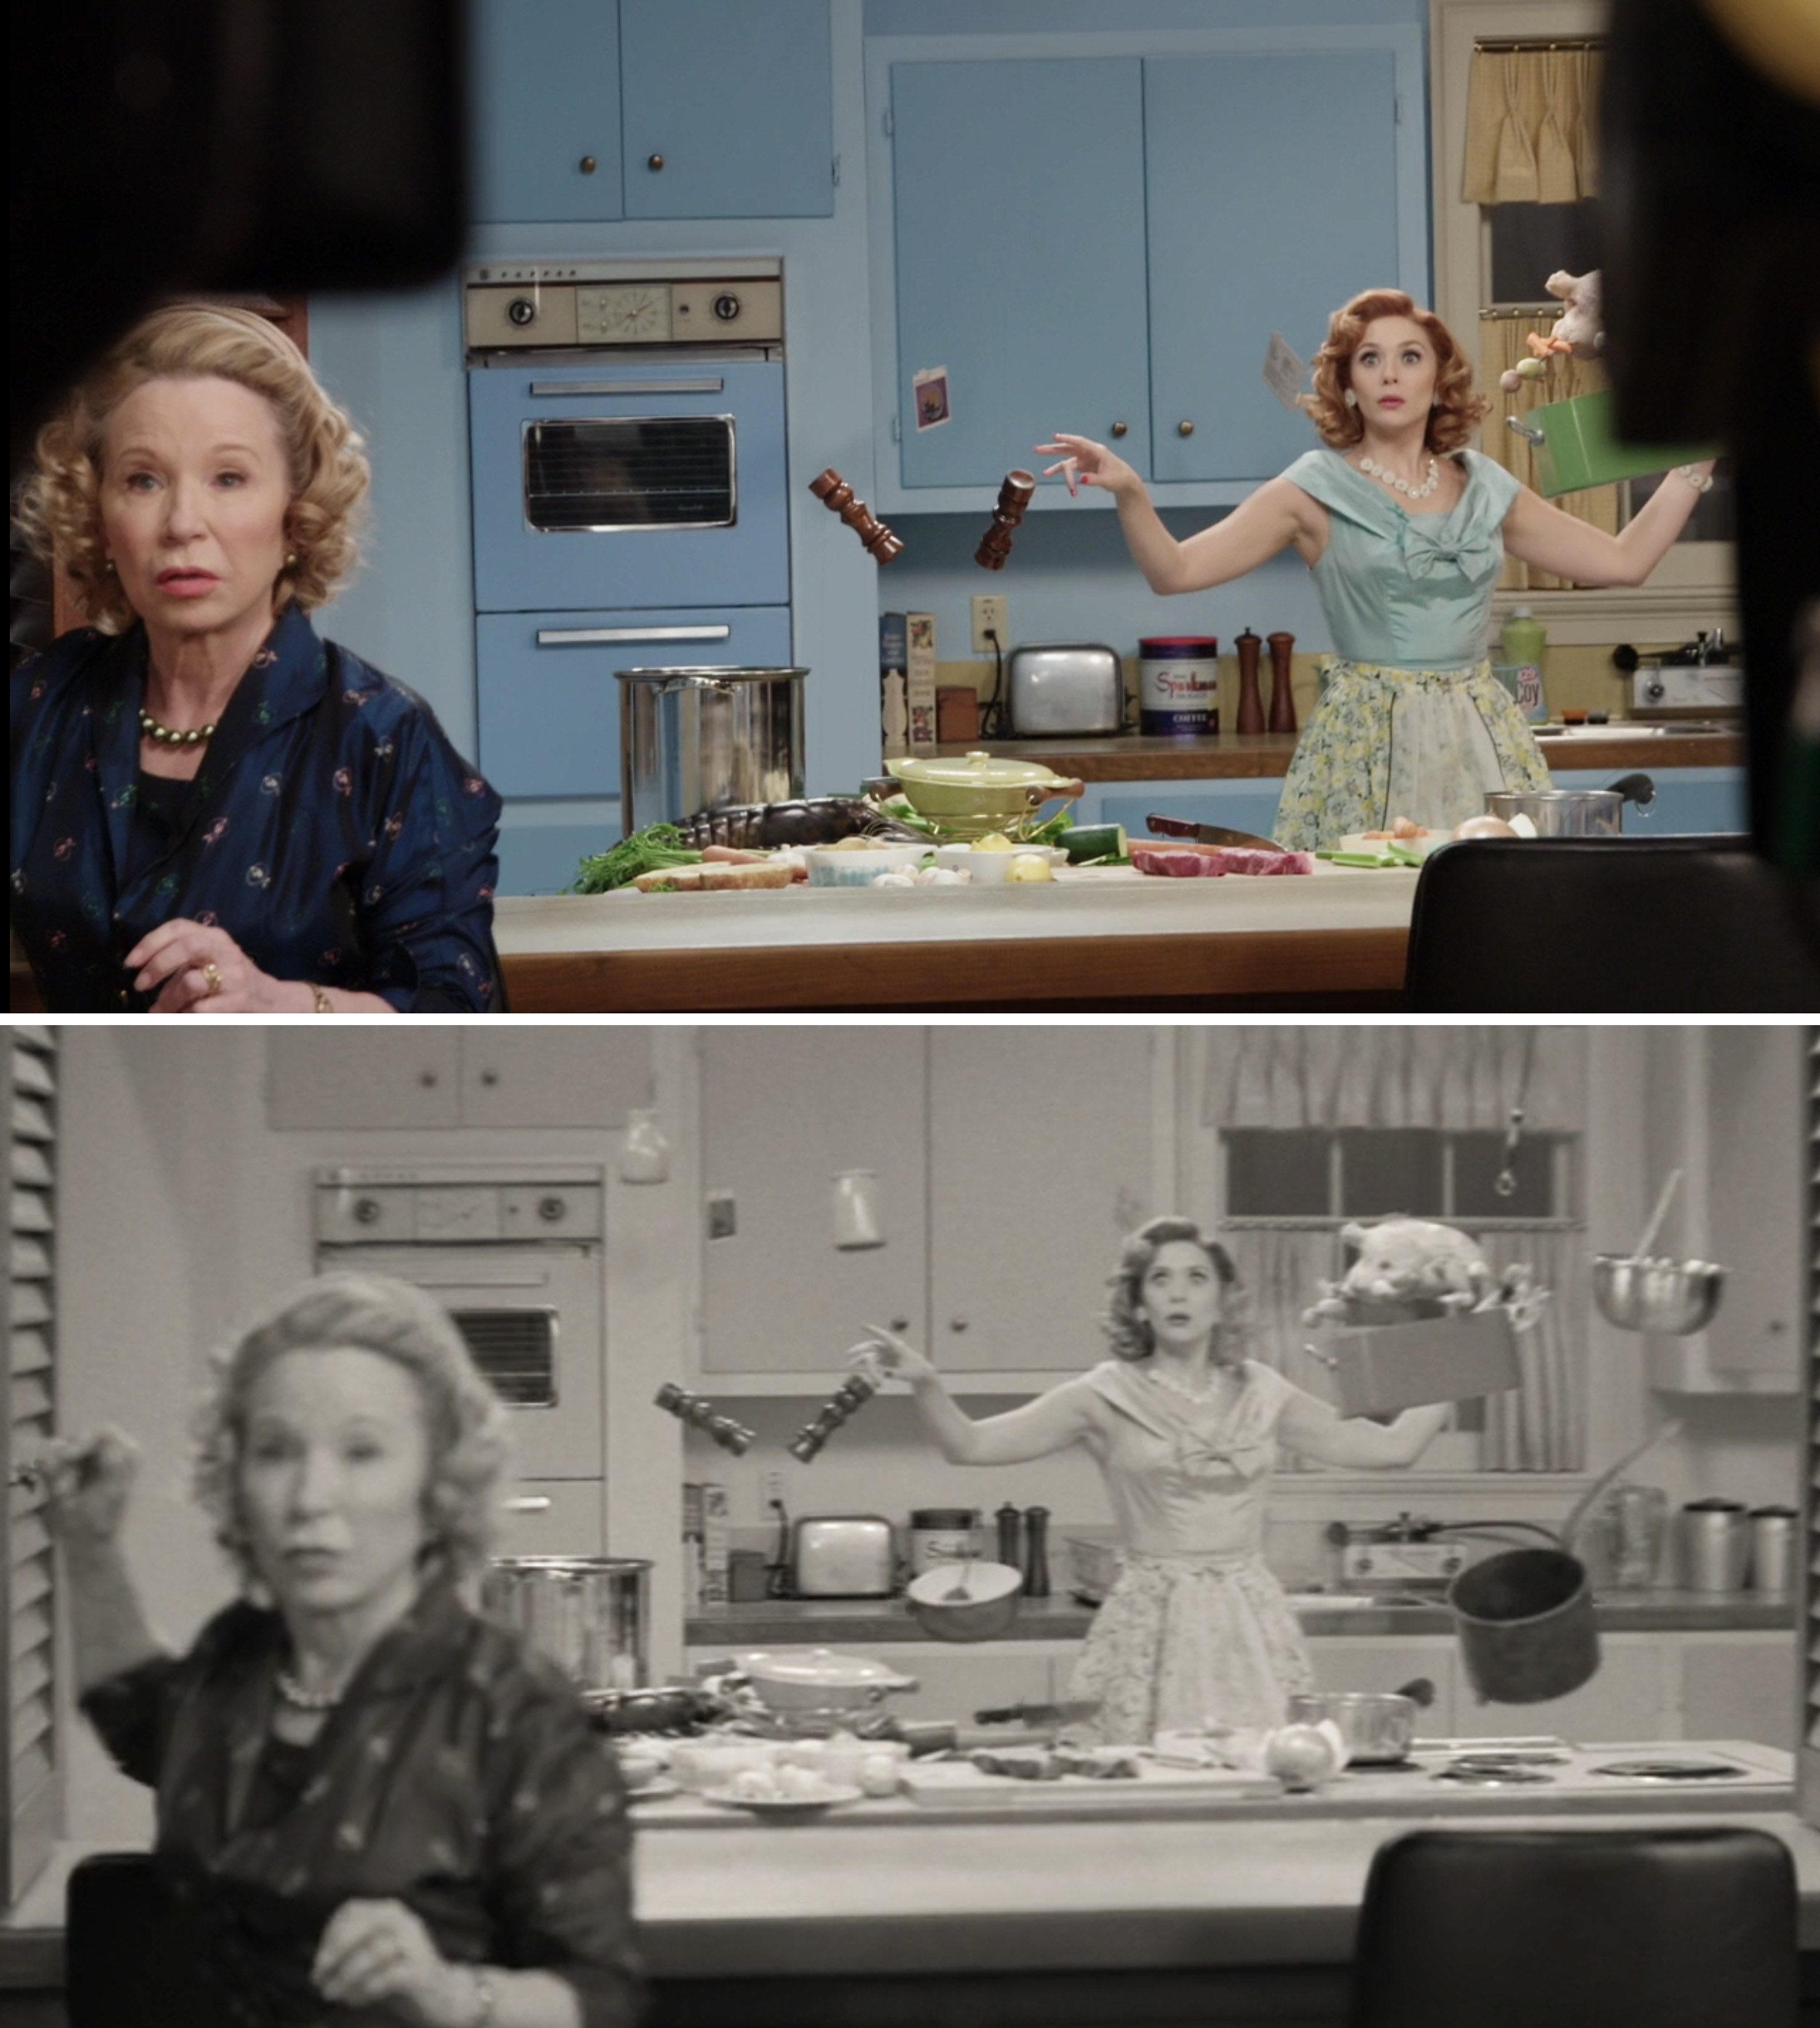 伊丽莎白·奥尔森和黛布拉乔拉普拍摄一个场景在万达浮动对象在厨房里